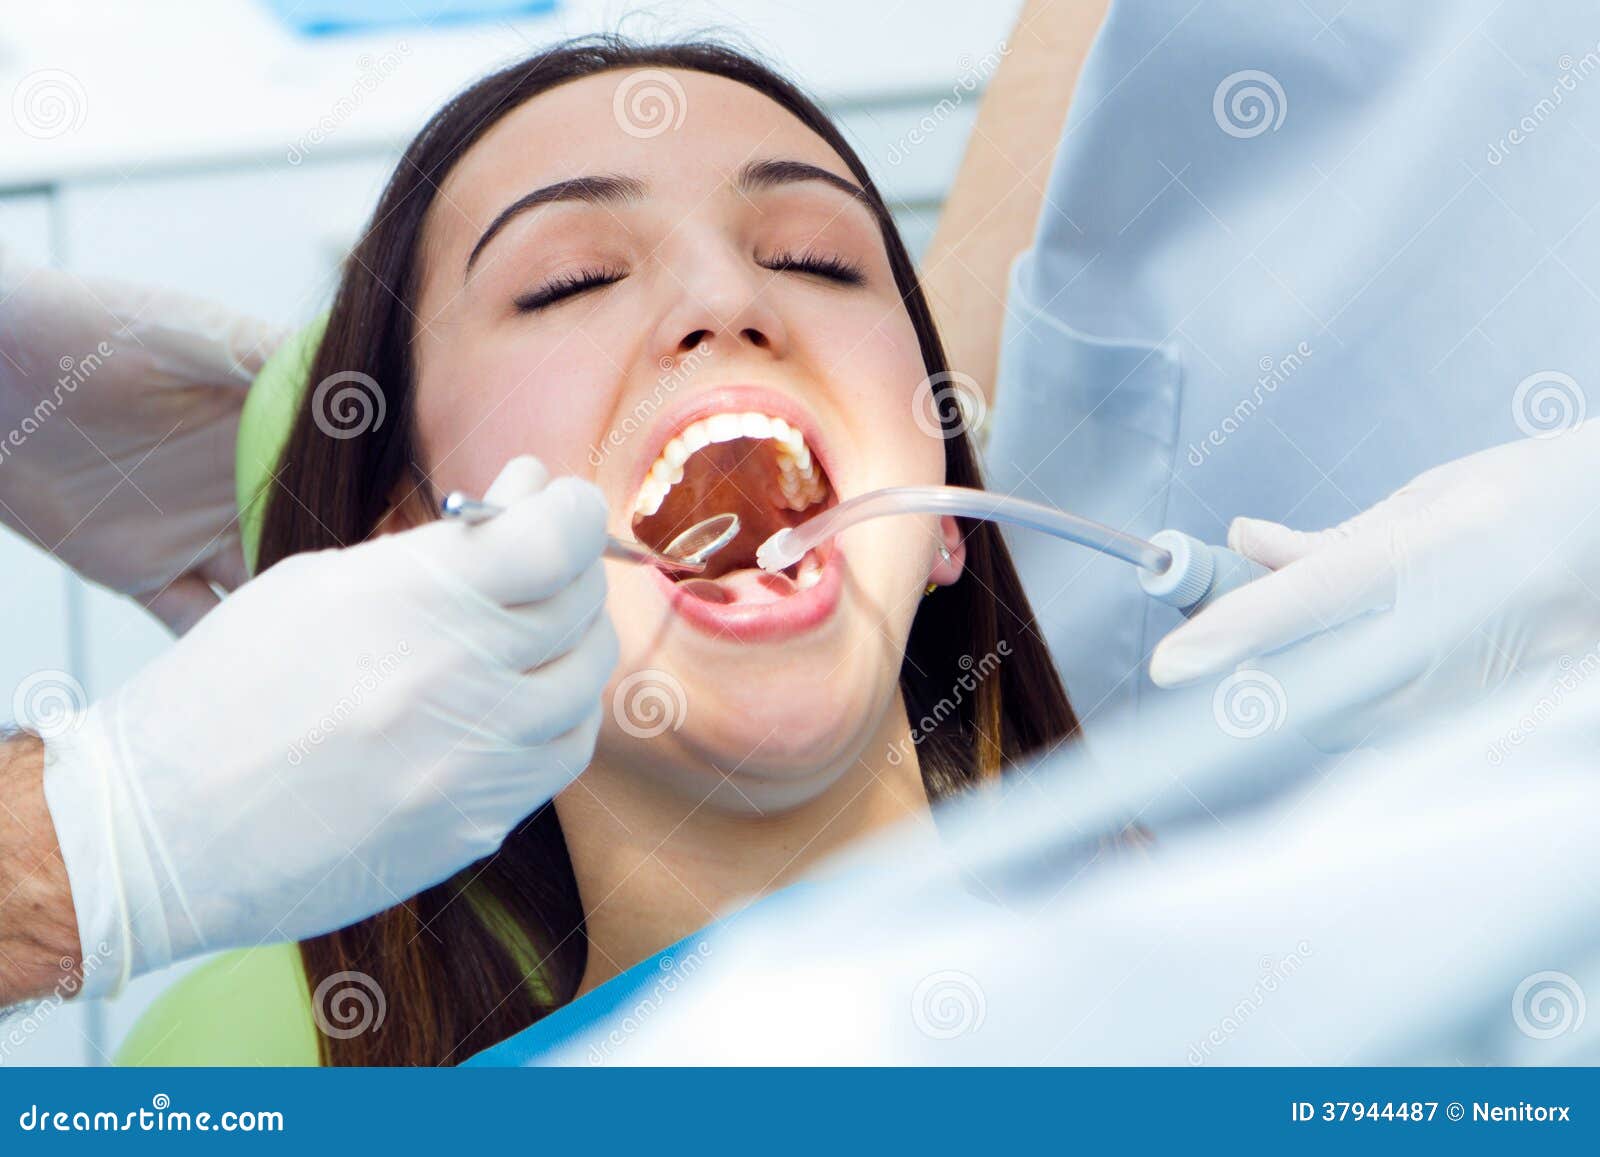 Открой рот видела. Открытый рот у стоматолога. Девочка у стоматолога. У стоматолога с открытым ртом.